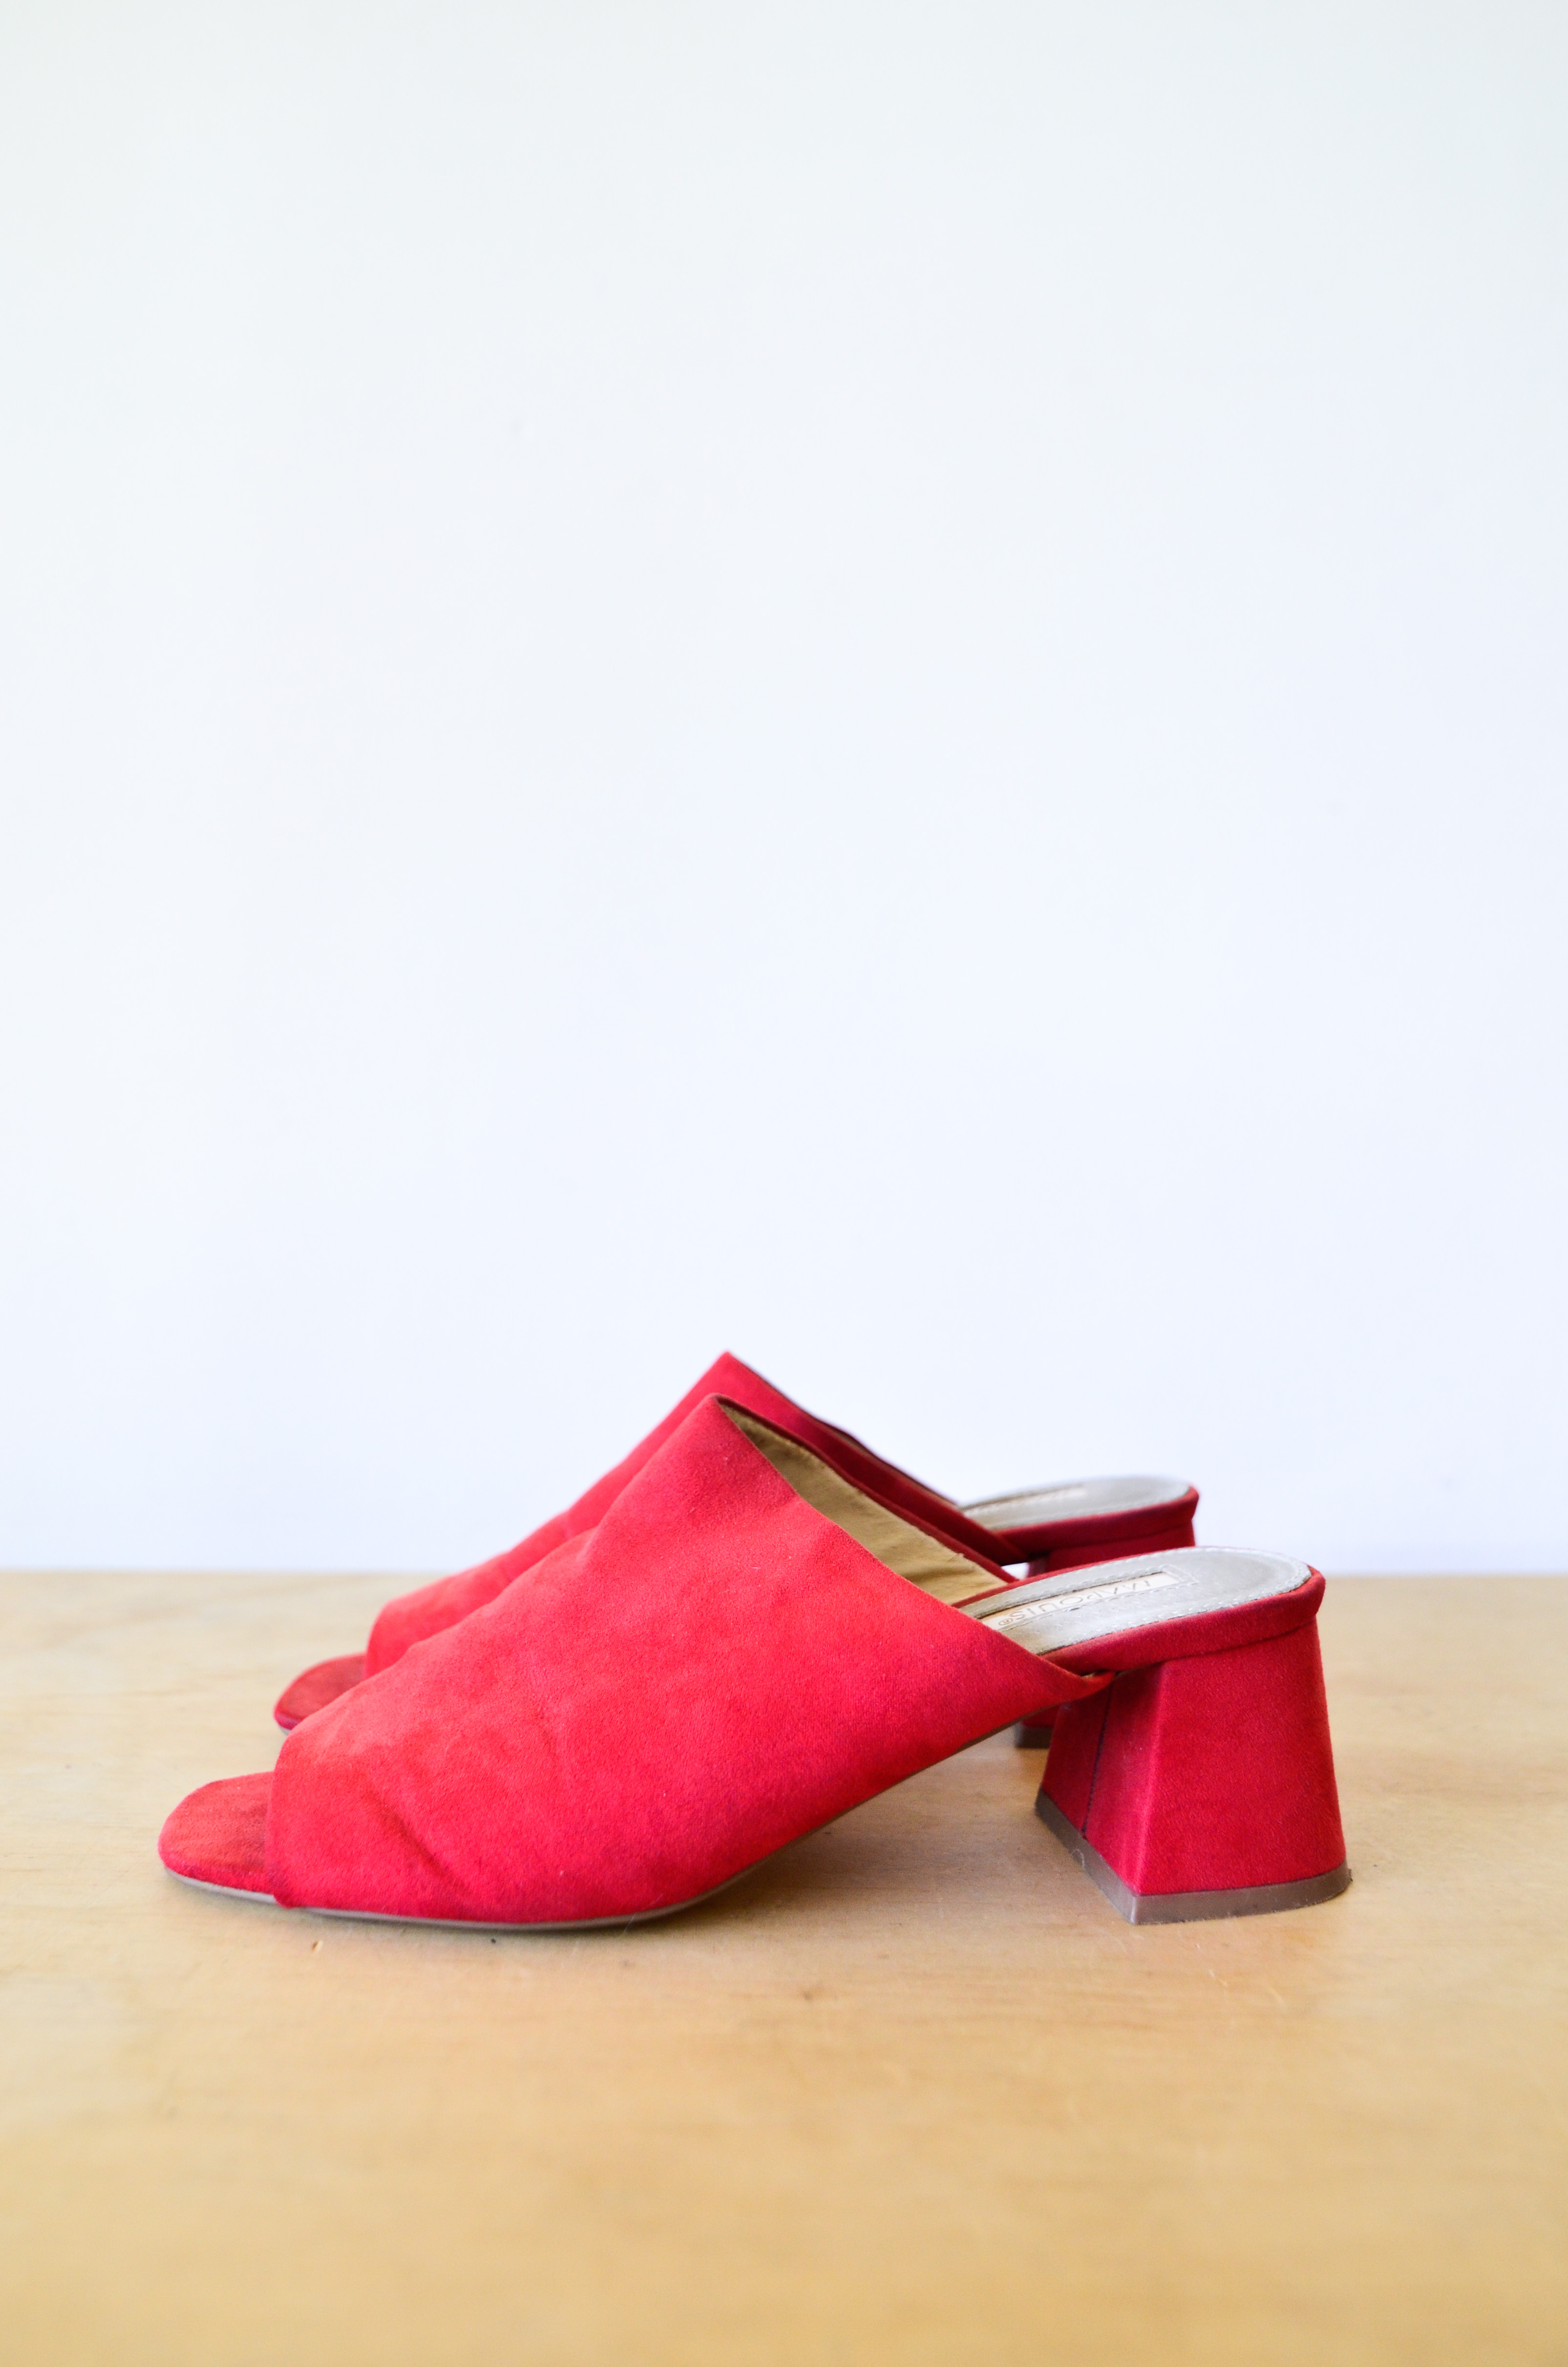 Zapatos rojos mules